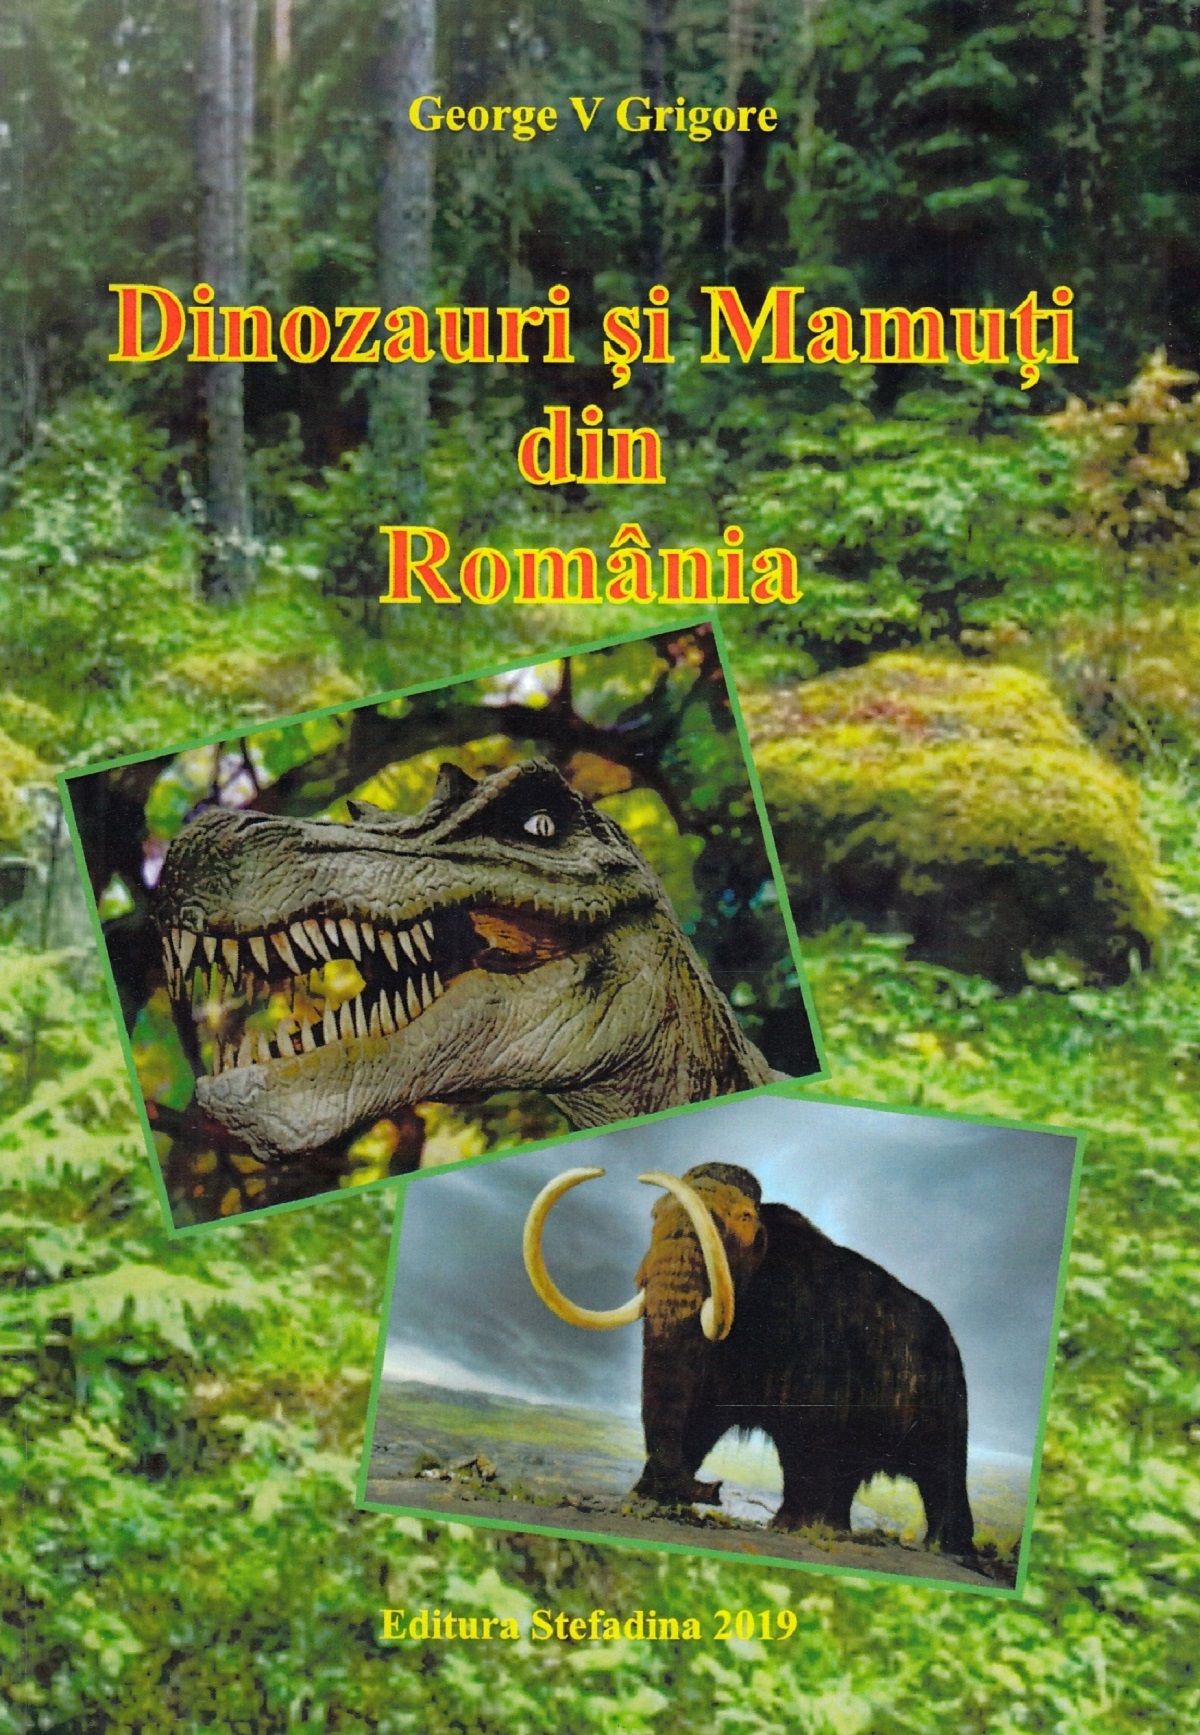 Dinozauri si mamuti din Romania - George V. Grigore